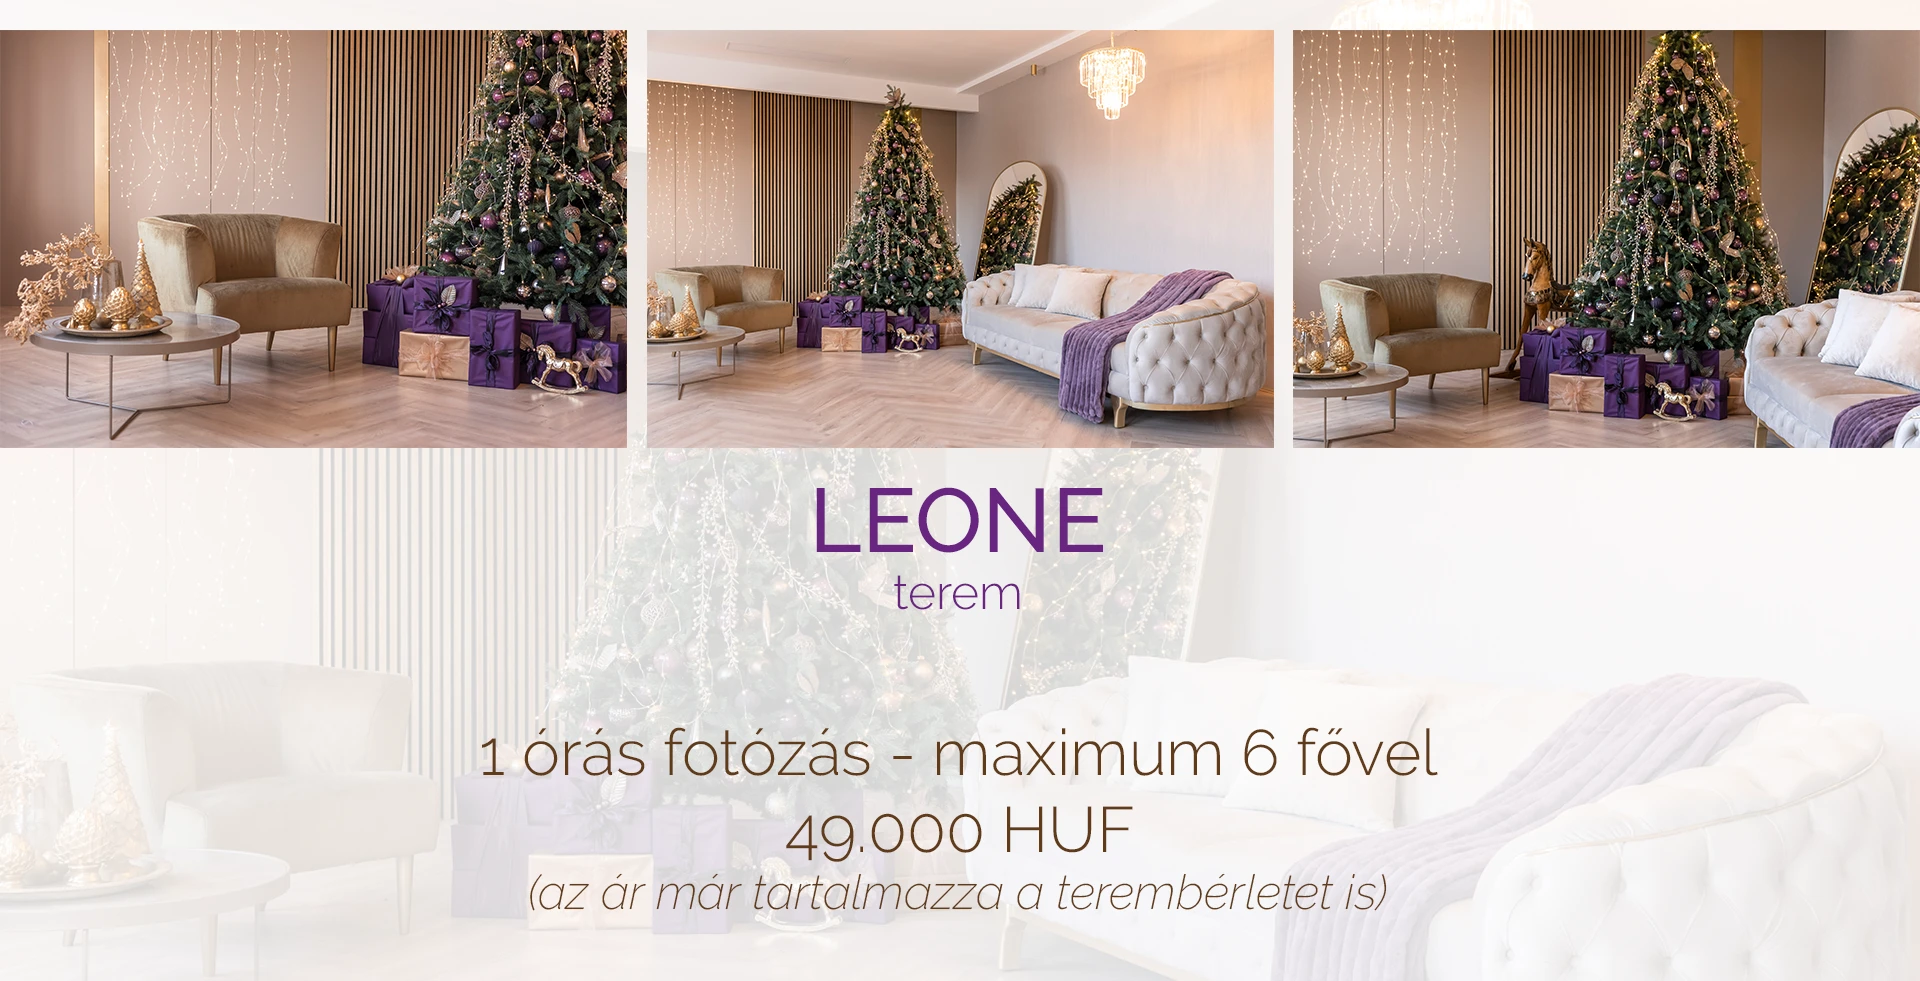 Karácsonyi fotózás - Budapest - Leone terem